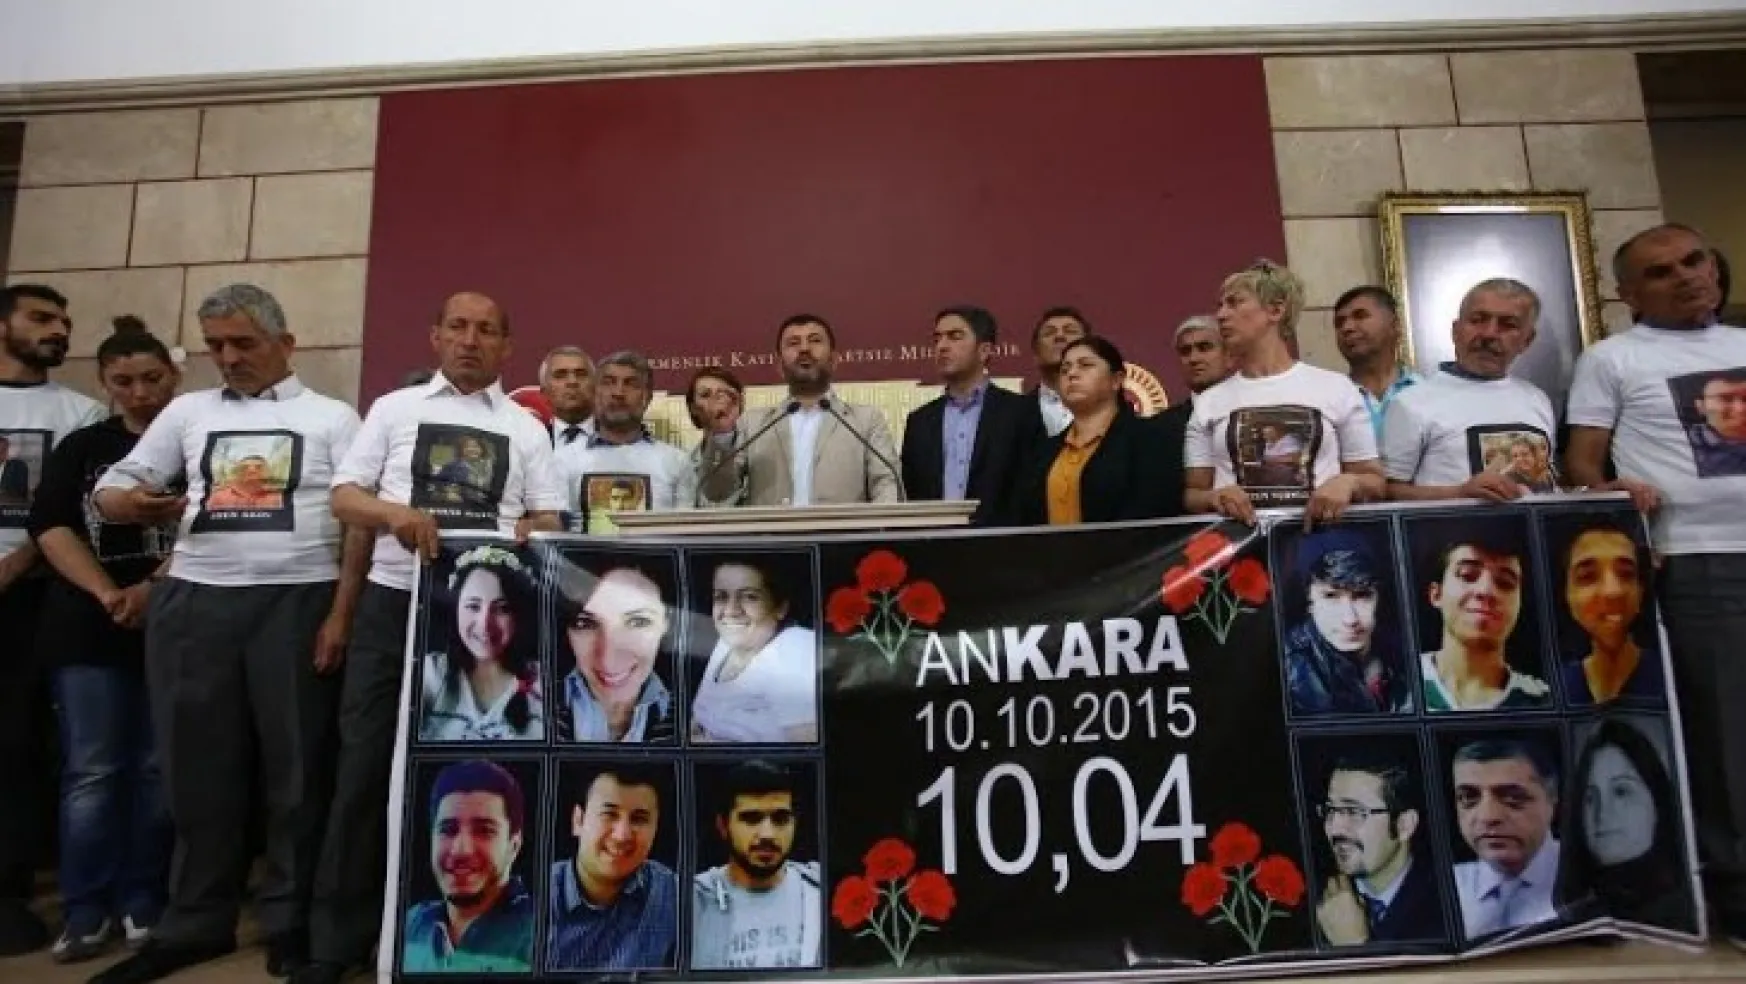 CHP Genel Bşk. Yrd. Mv. Ağbaba' Aradan Geçen 6 Yıla Rağmen Acımız Hala Taptaze'